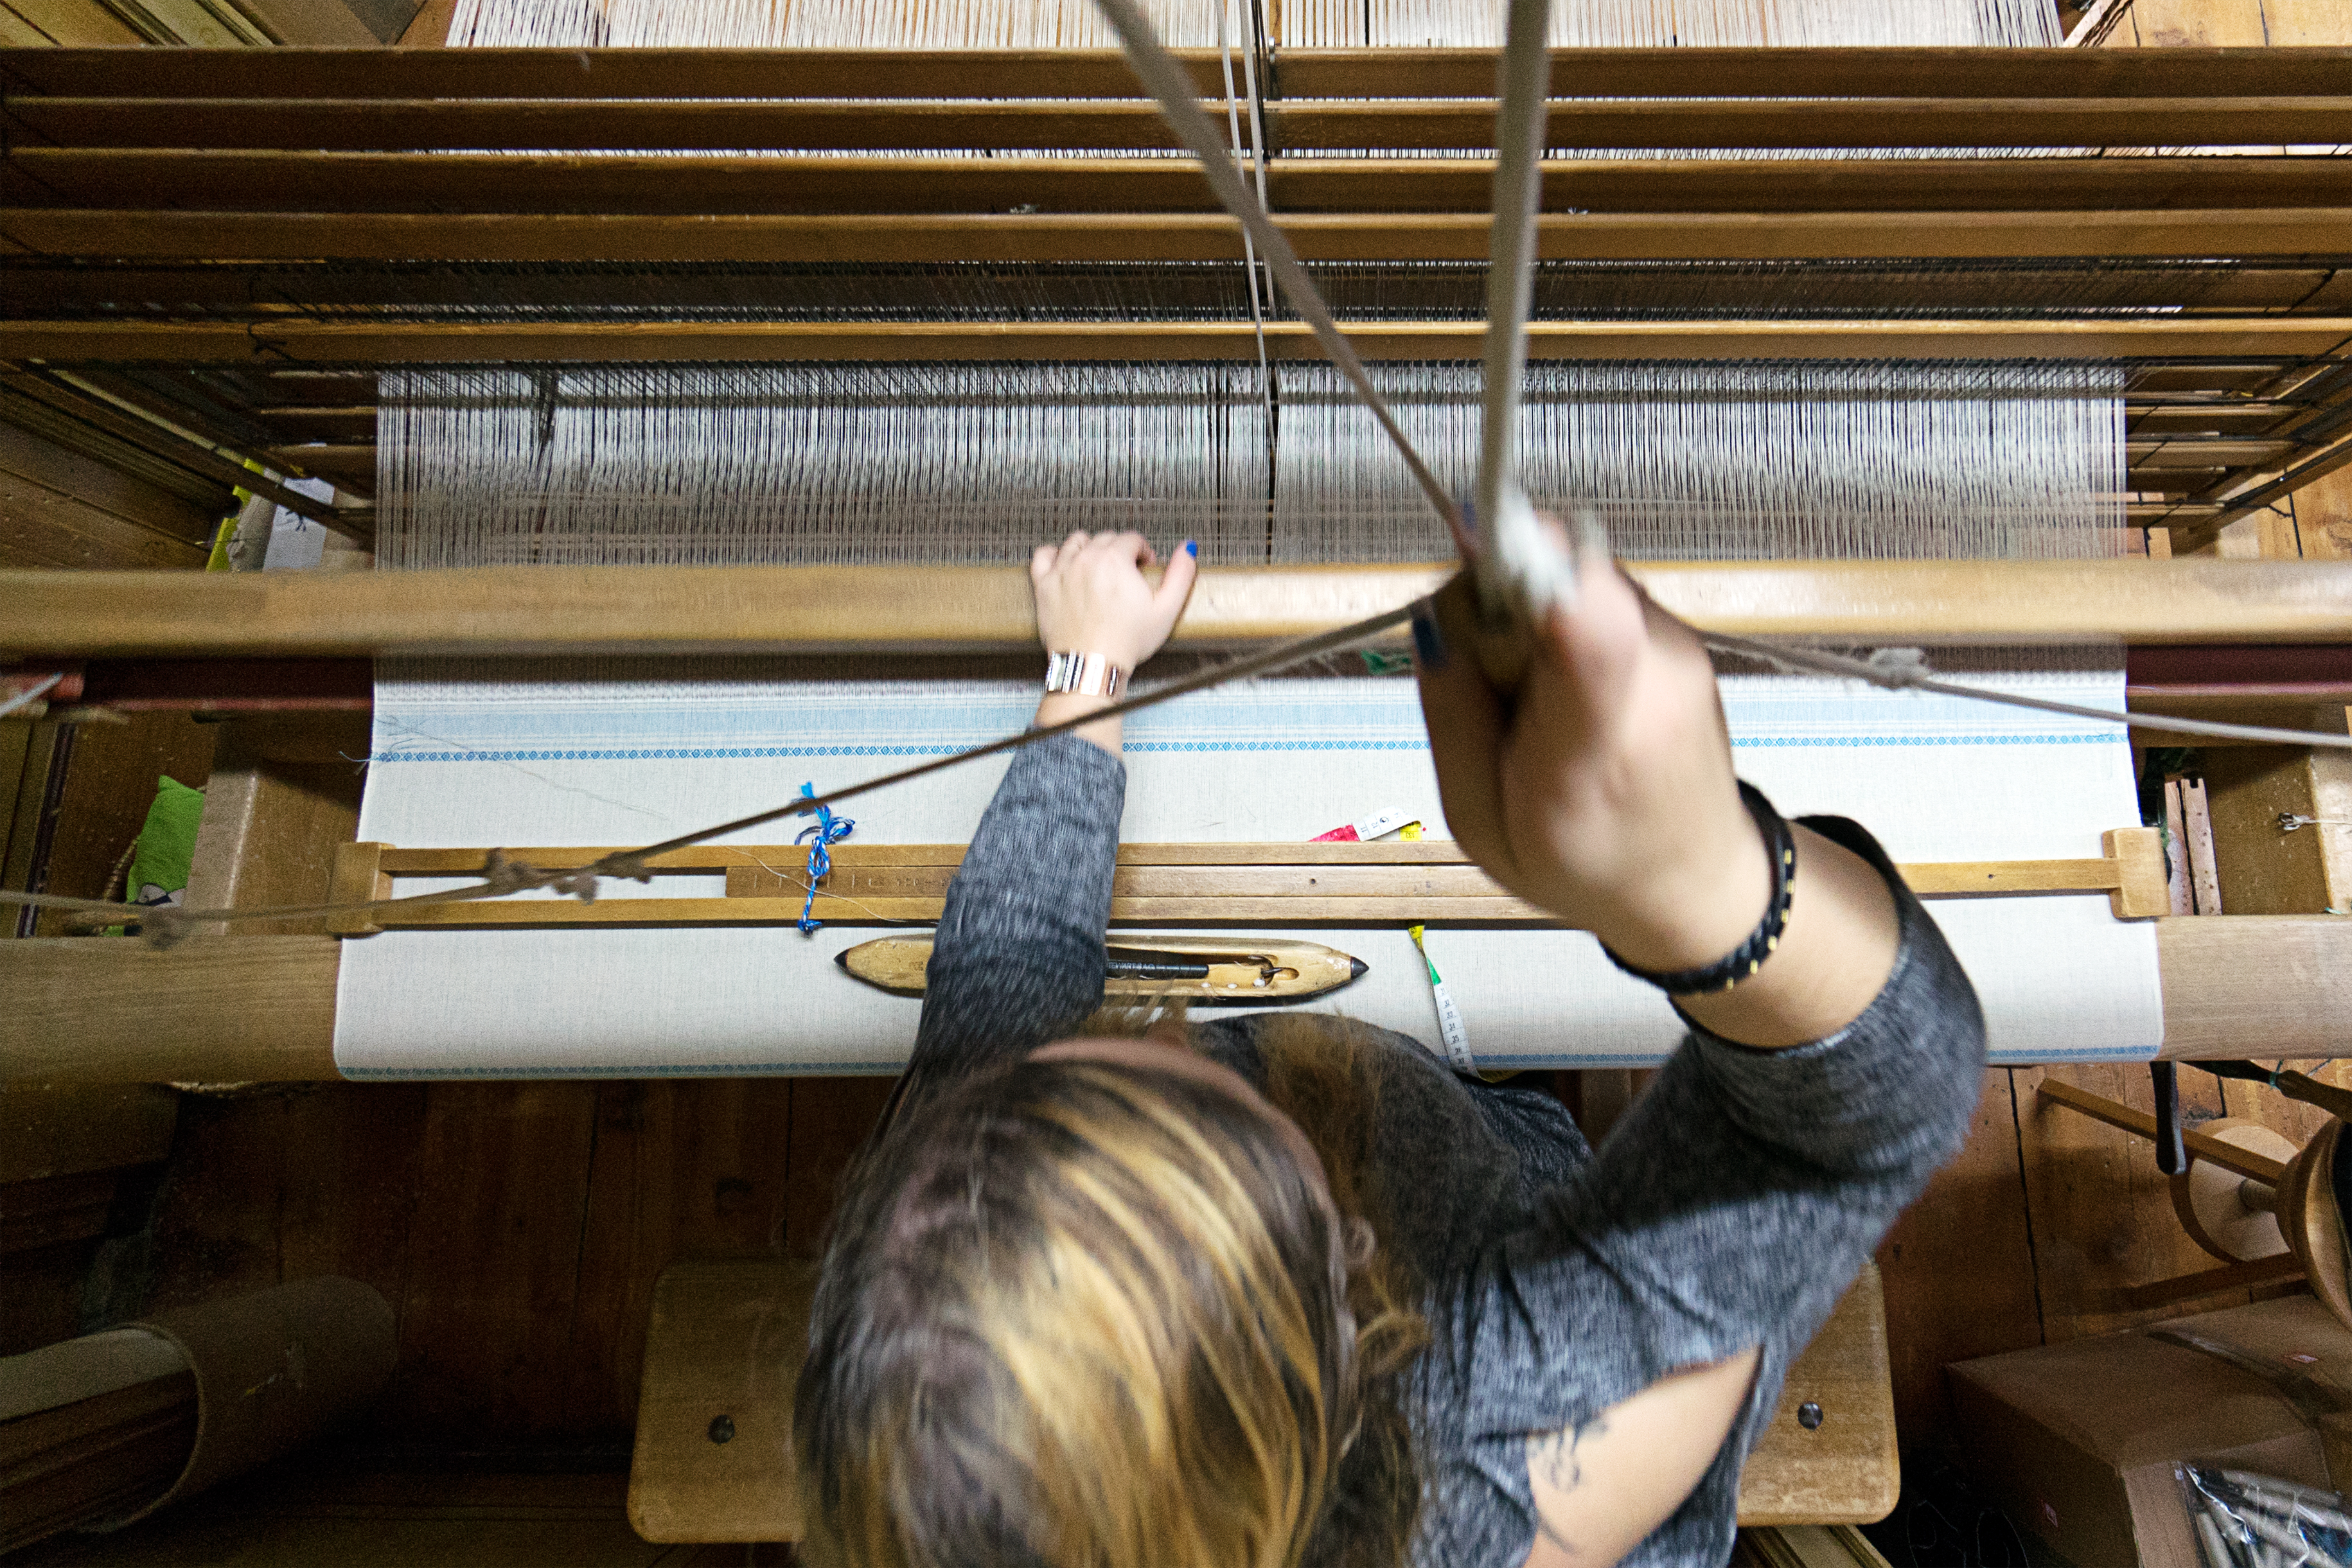 協同組合として1955年に操業開始したヴァル・ポスキアーヴォ織物工房。従業員の大半が女性だ